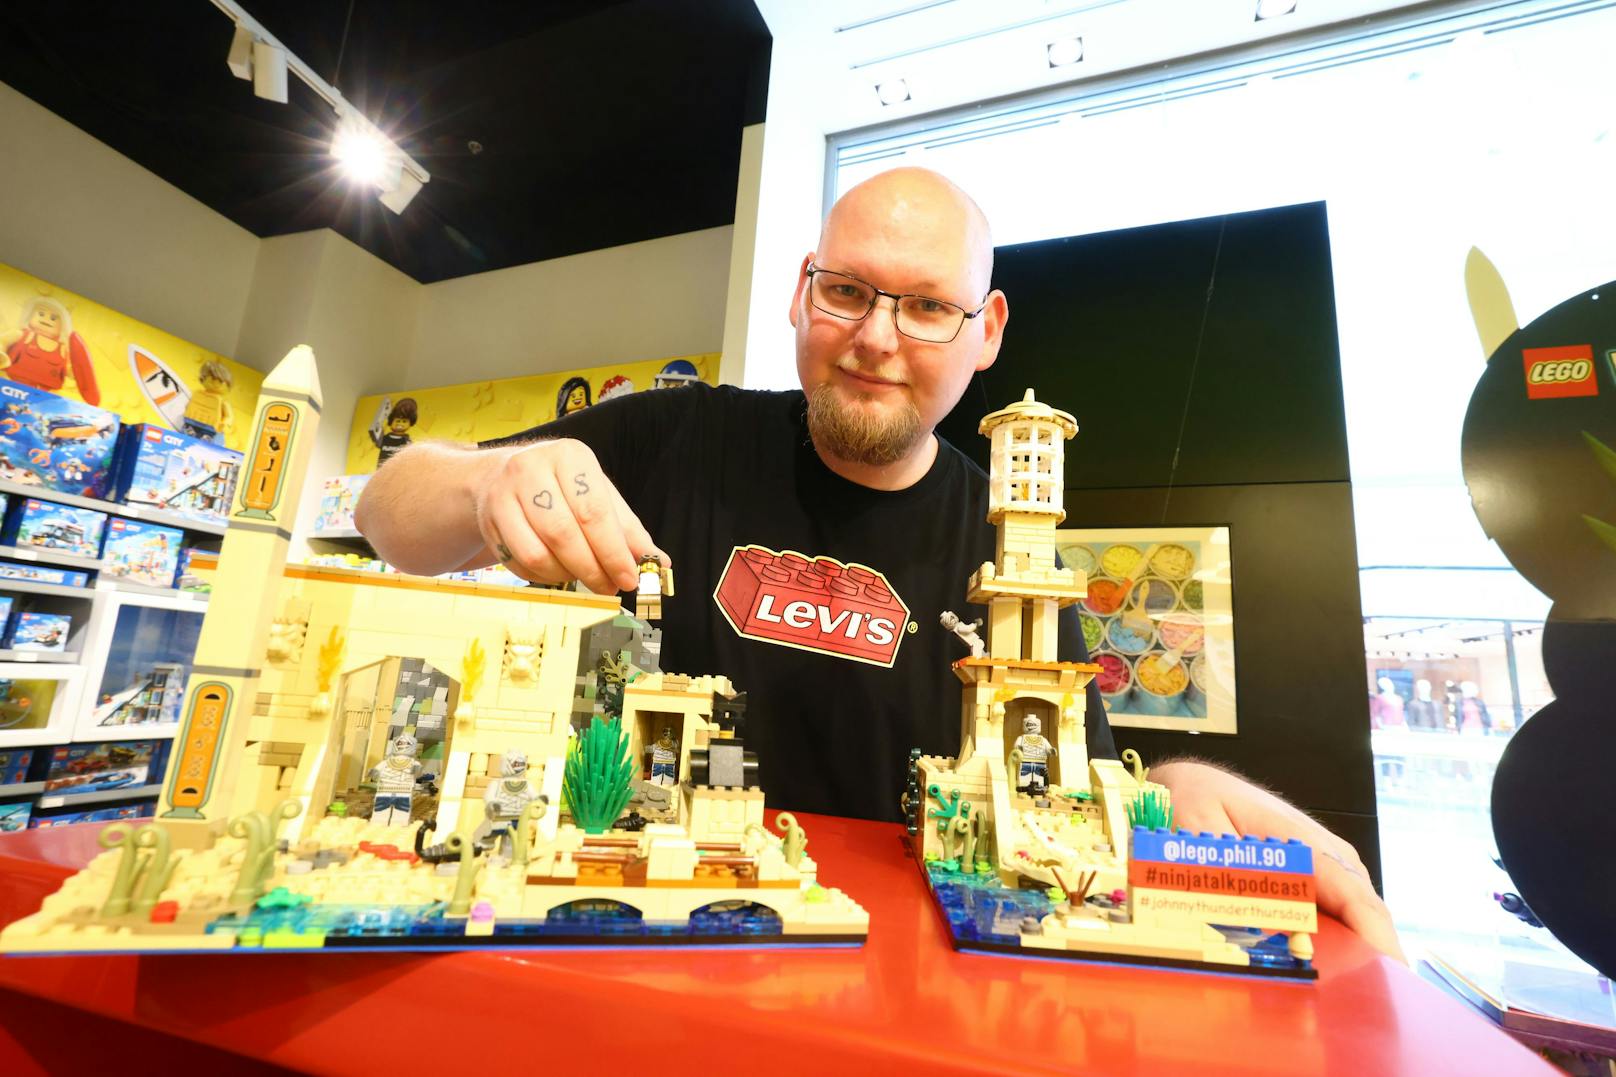 Philipp mit einer seiner Lego-Kreationen, die aktuell in der SCS Vösendorf im Lego Store ausgestellt ist.